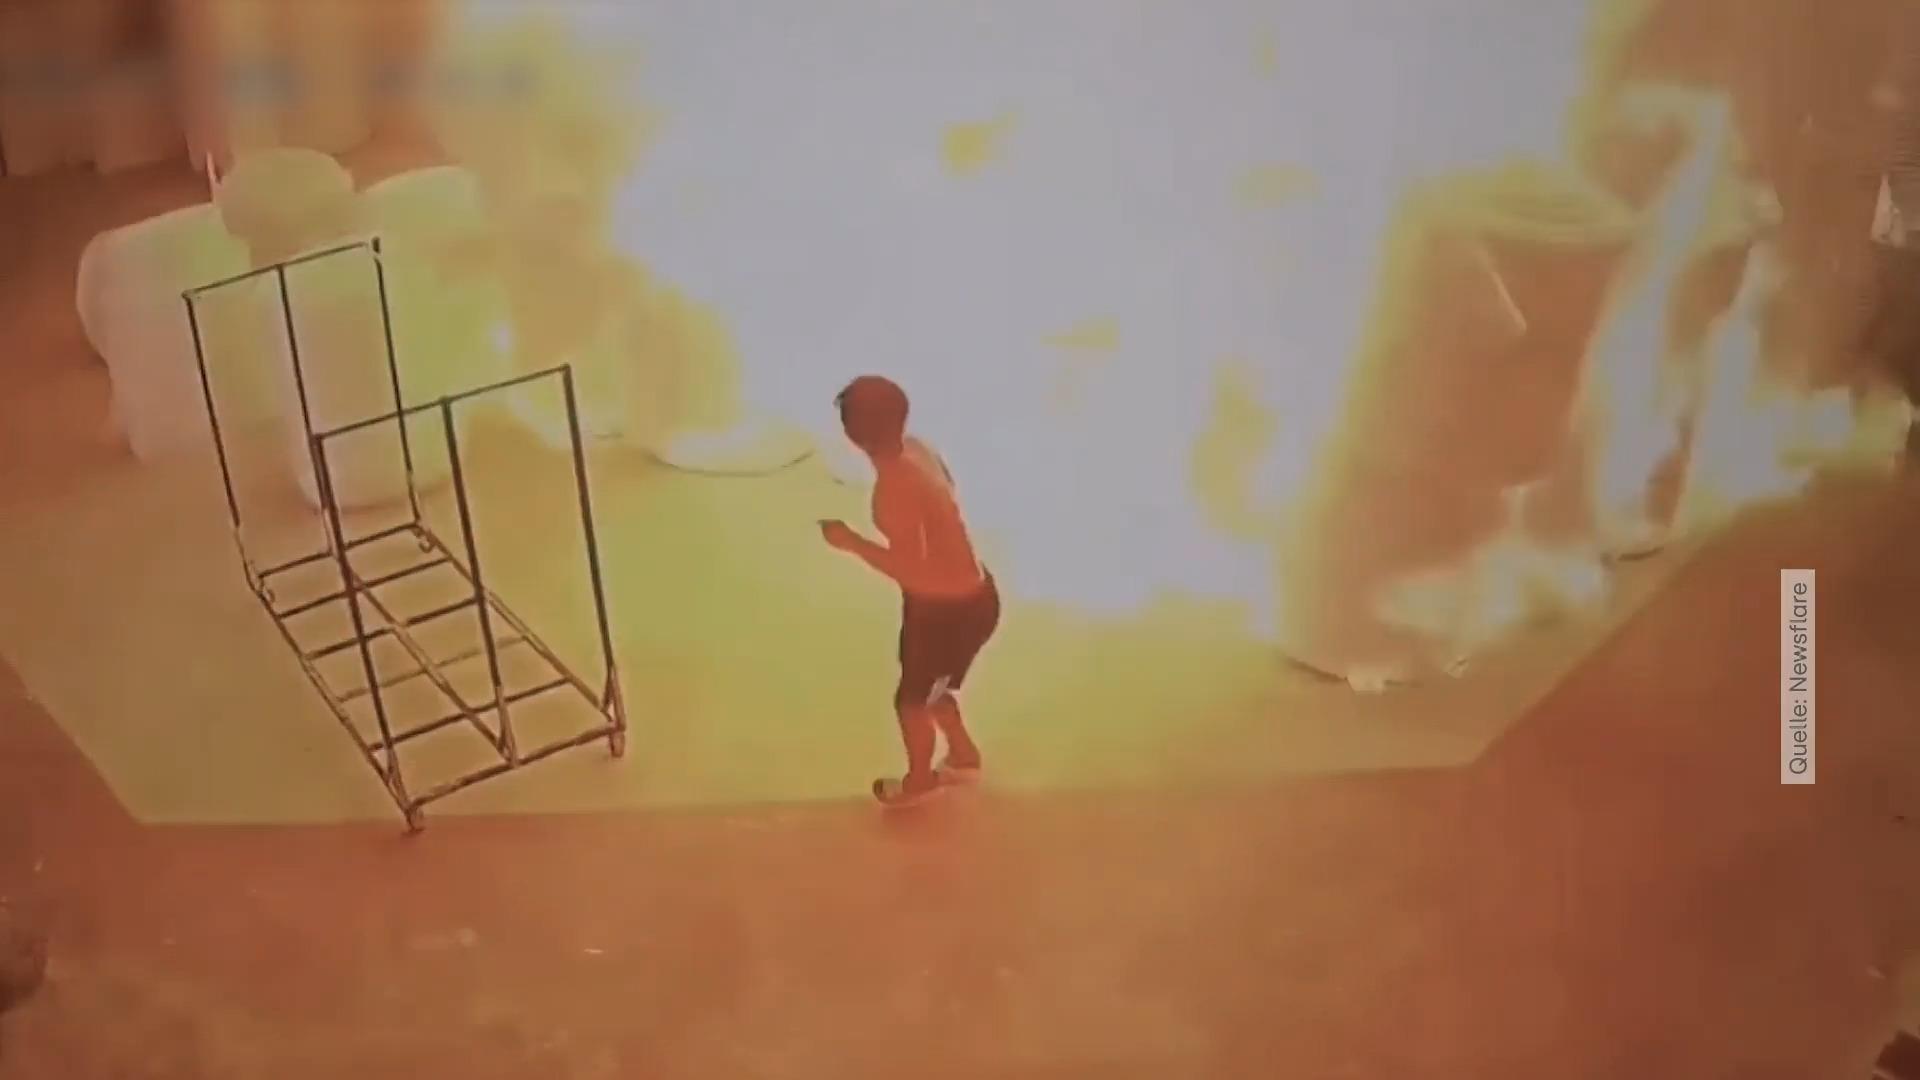 Arbeiter zündelt - ganzes Lager brennt in Sekundenschnelle Erschreckende Aufnahmen